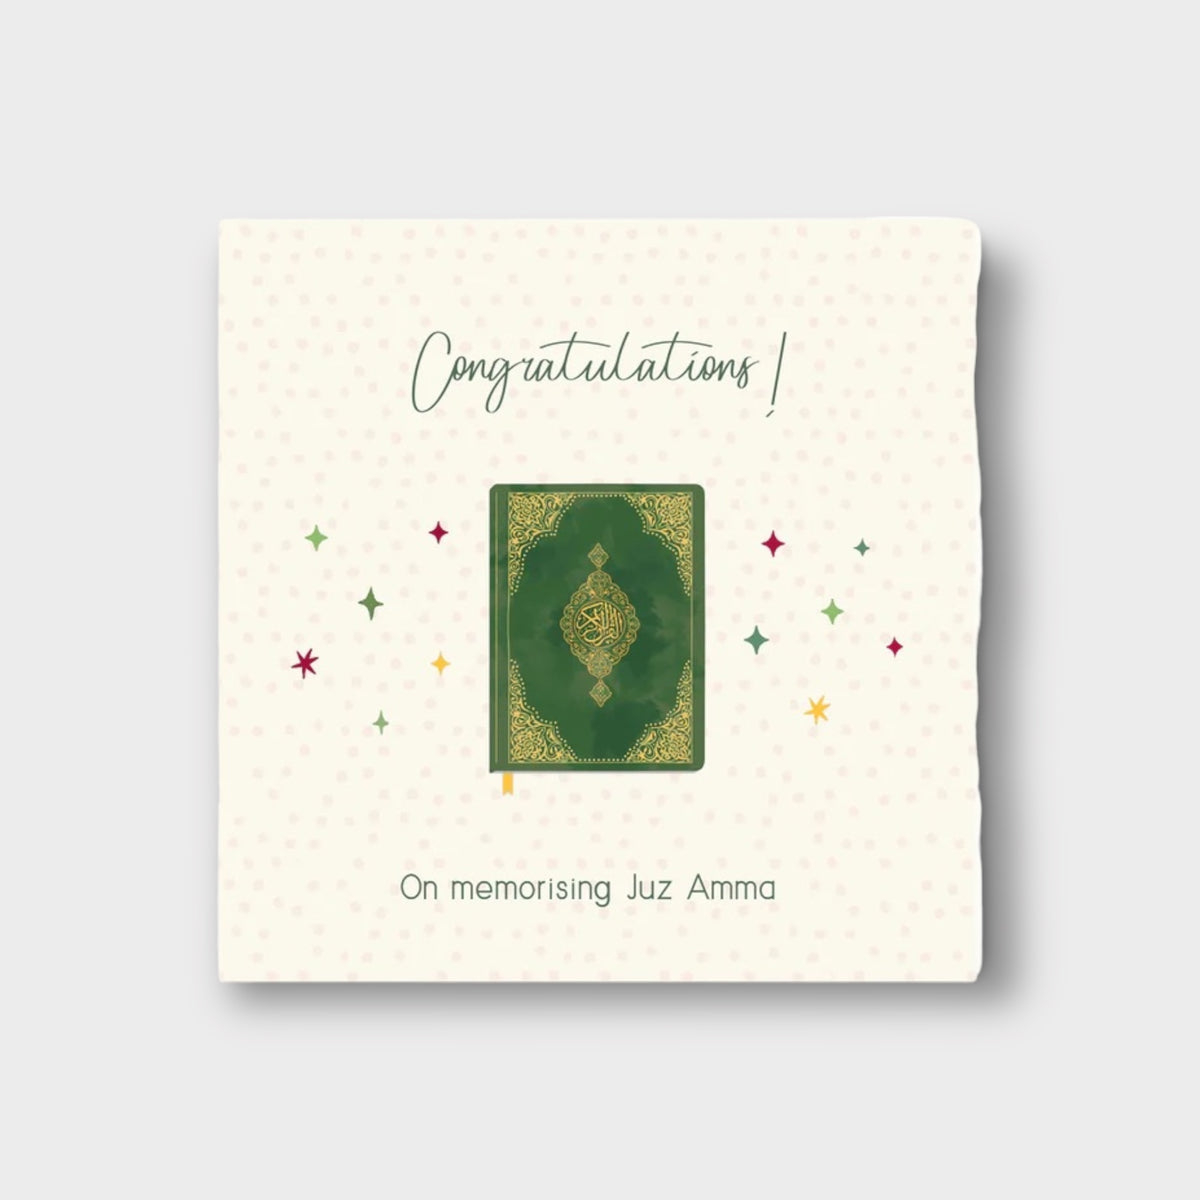 Congratulations! On memorising Juz Amma - Green Noble Kitab